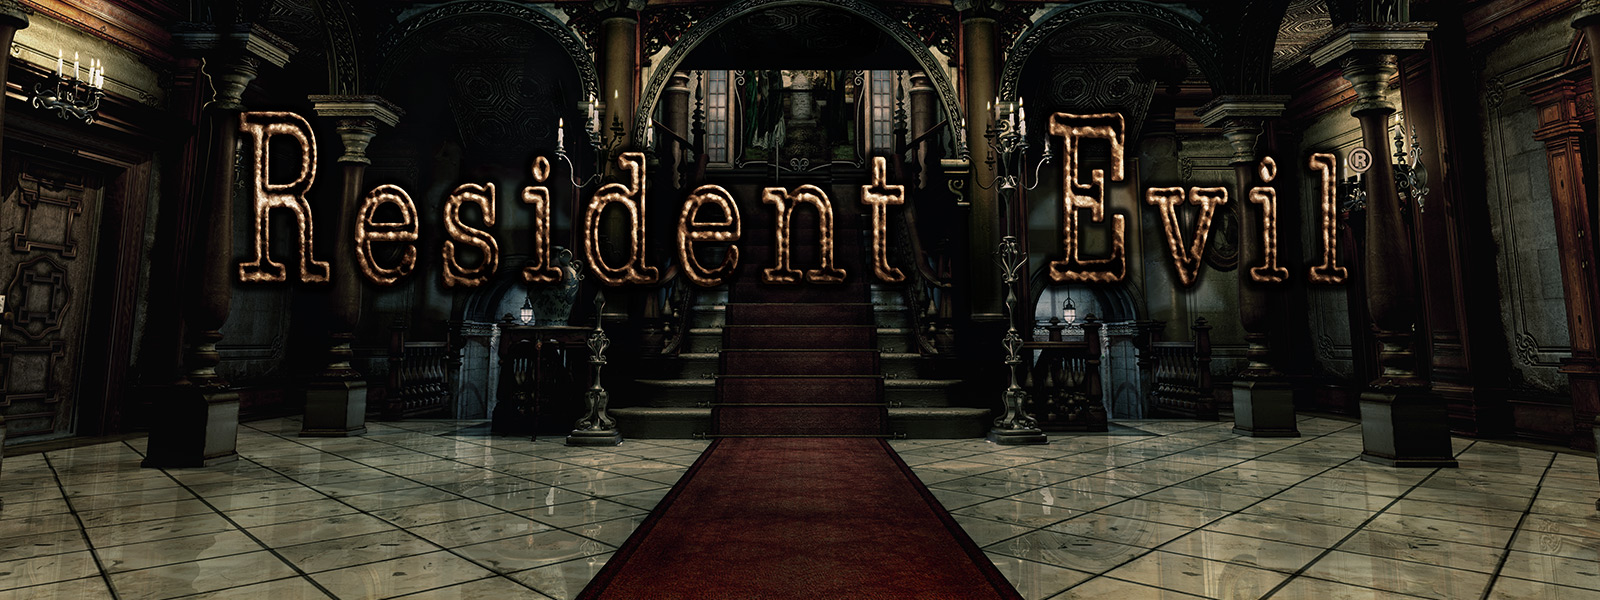 Resident Evil, imagem de um enorme hall com escadas cobertas com carpete vermelha